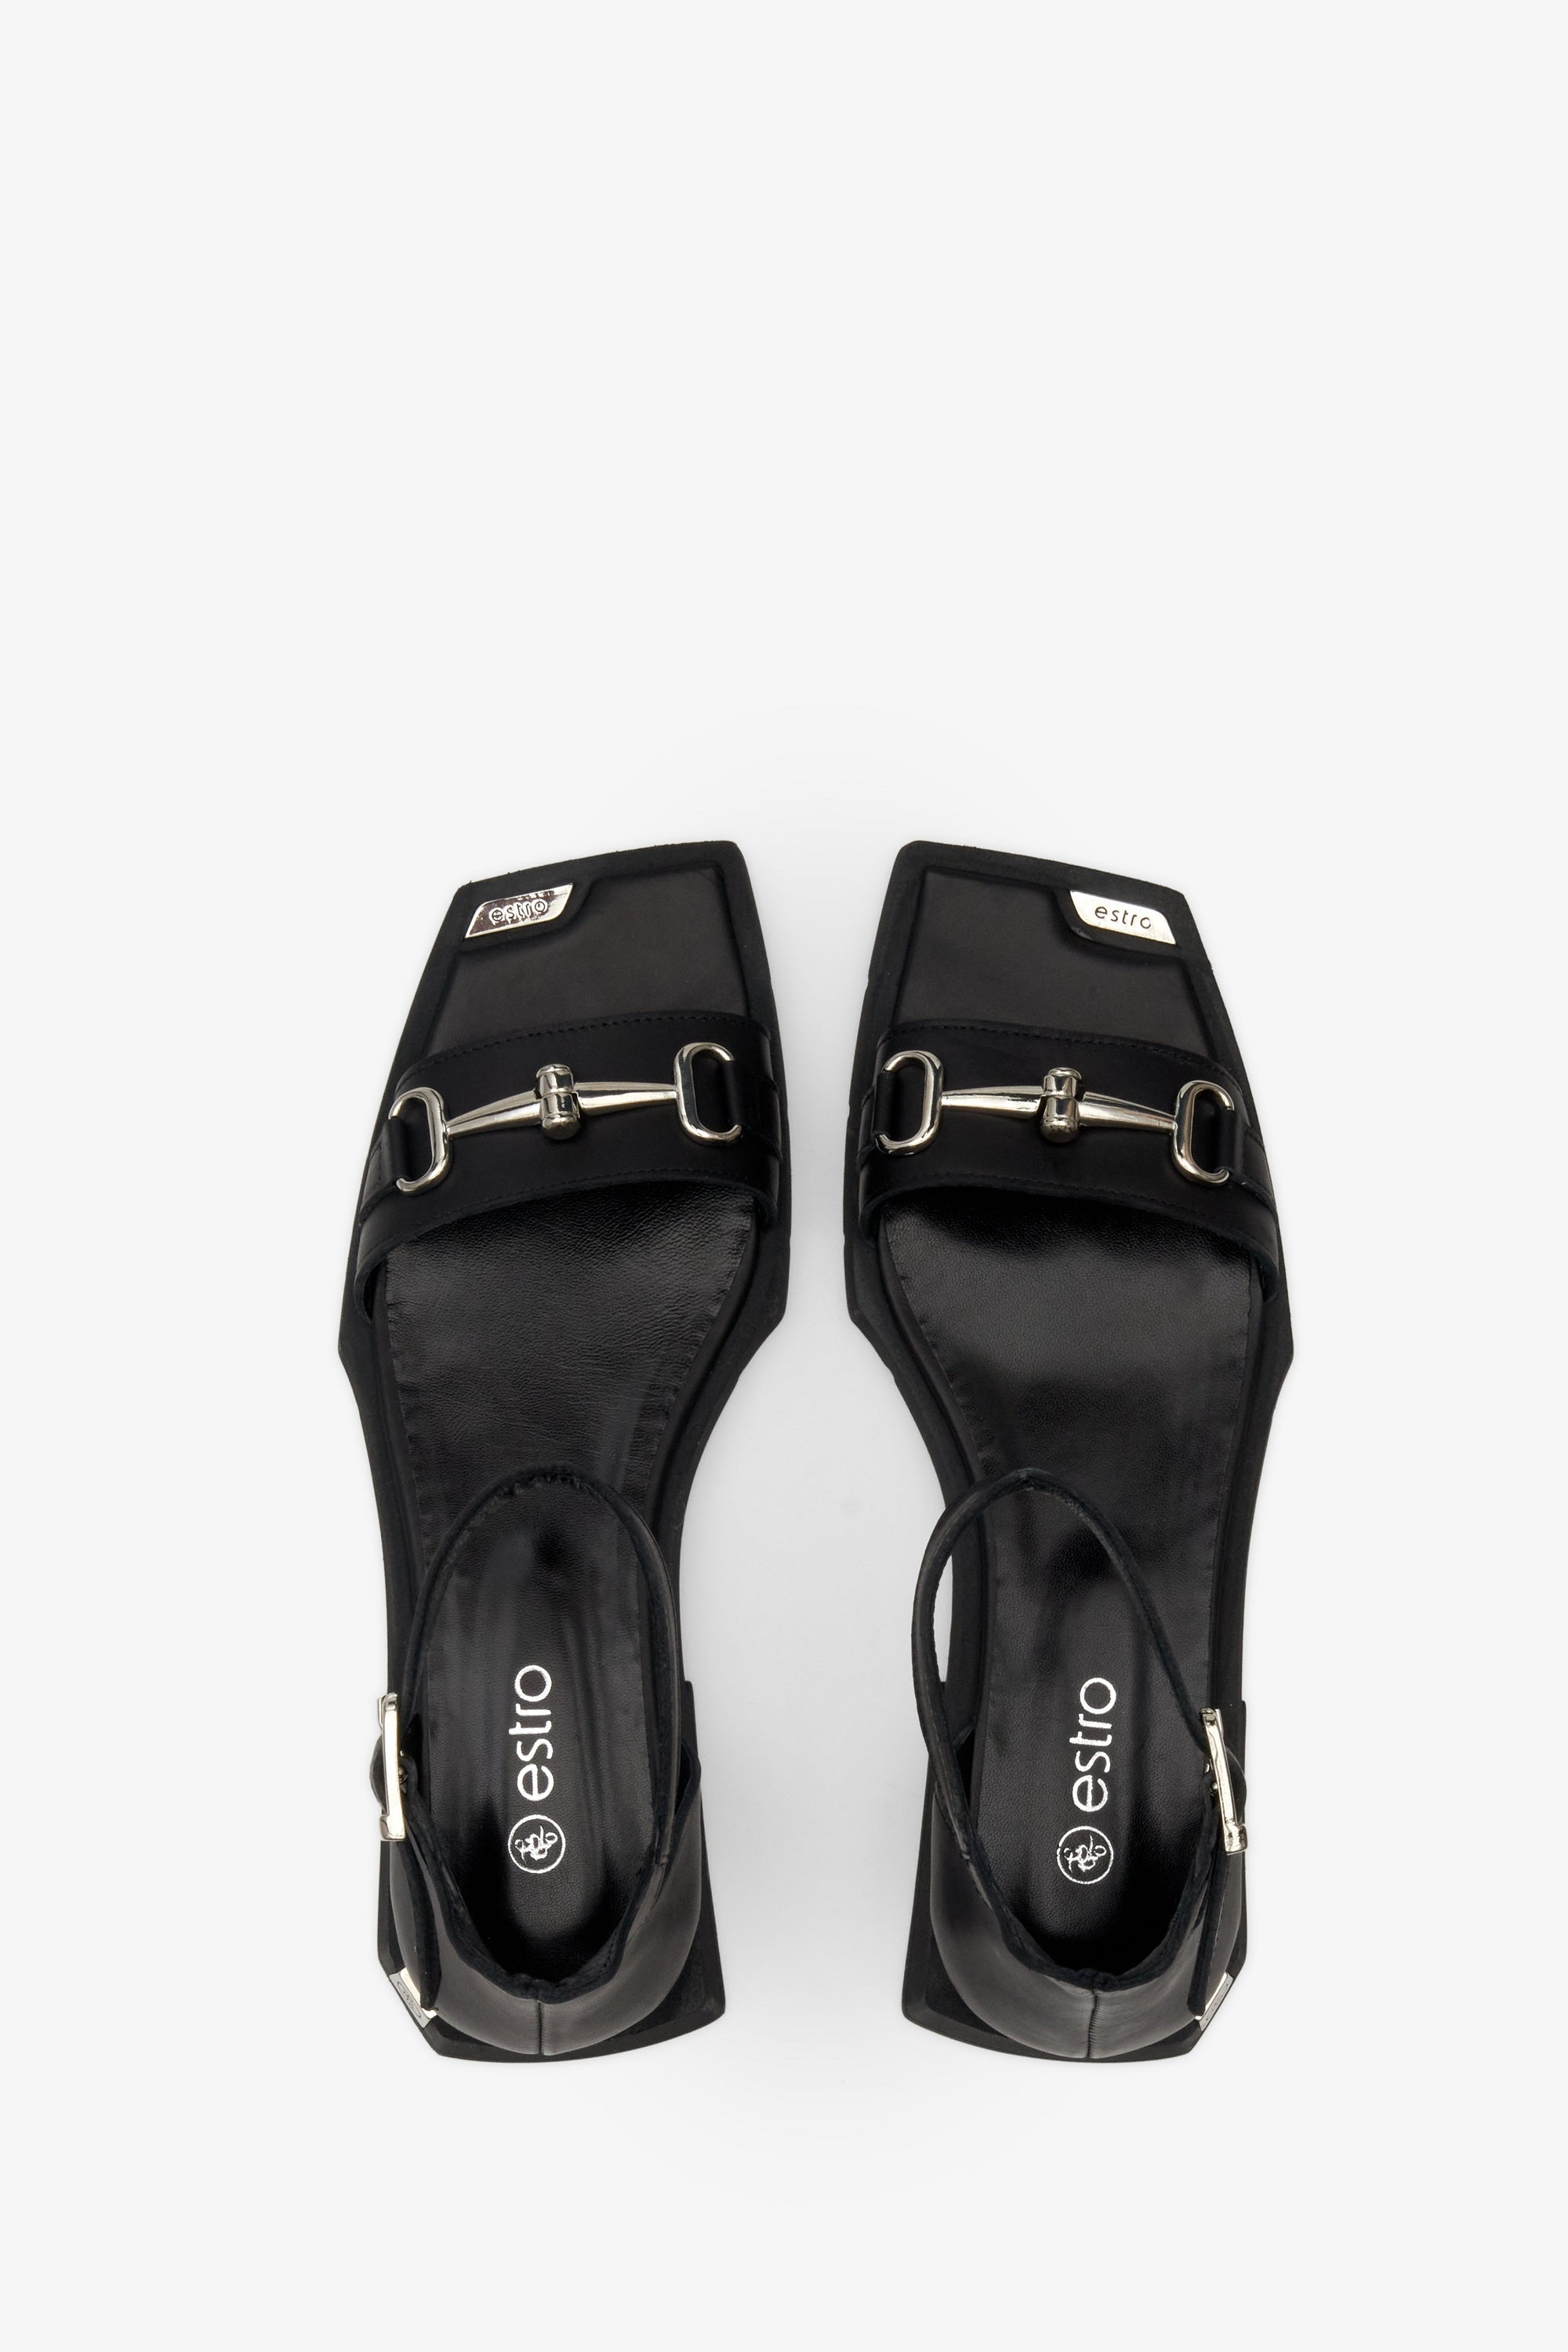 Czarne sandały damskie z zakrytą piętą Estro ER00111491